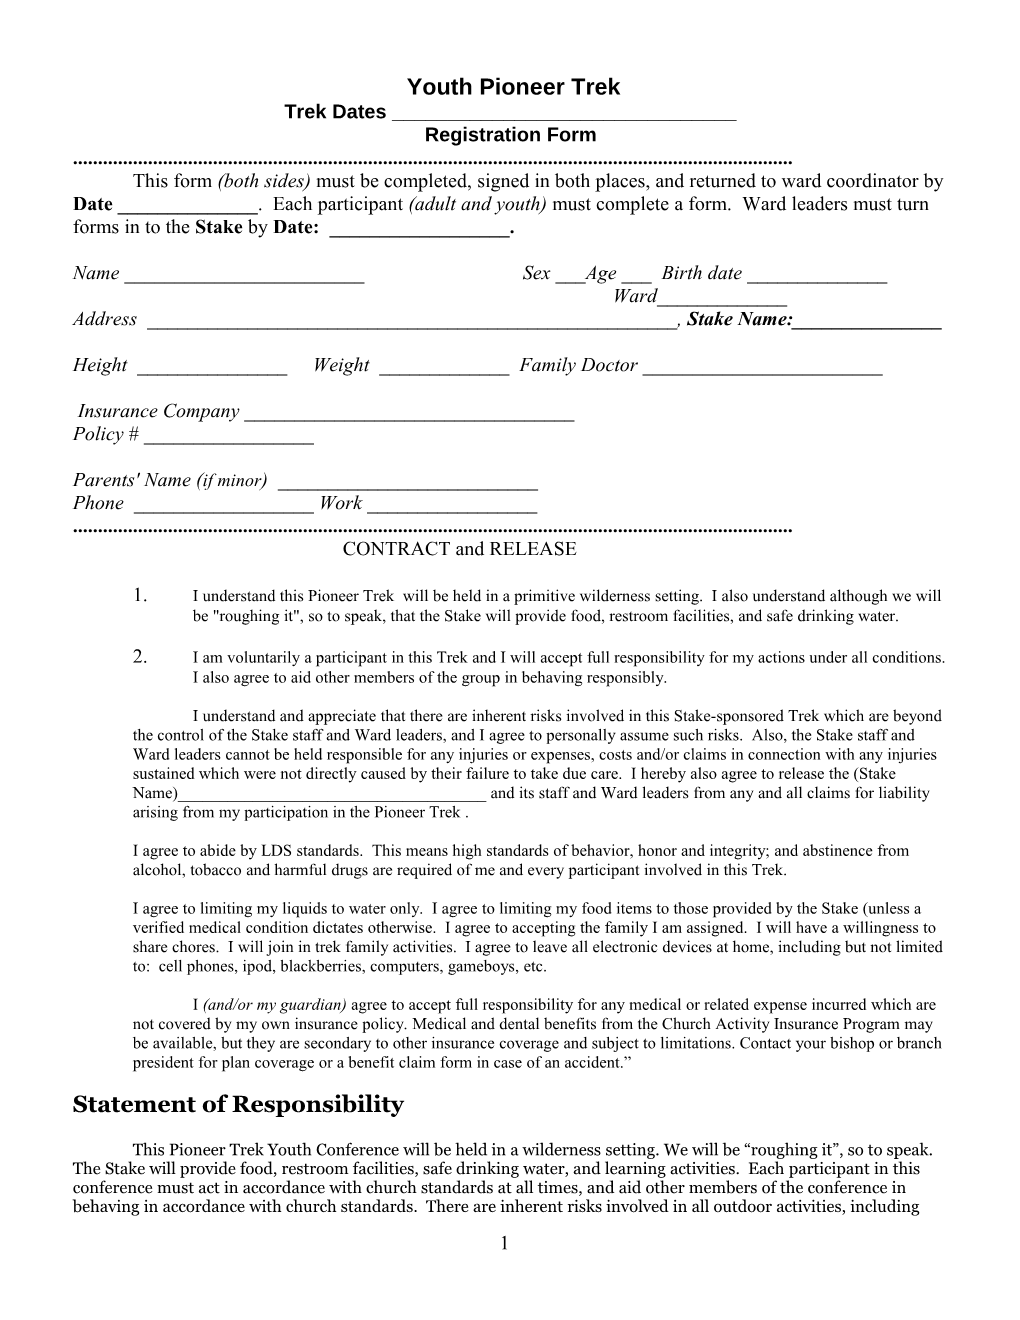 Sample Registration and Medical Form